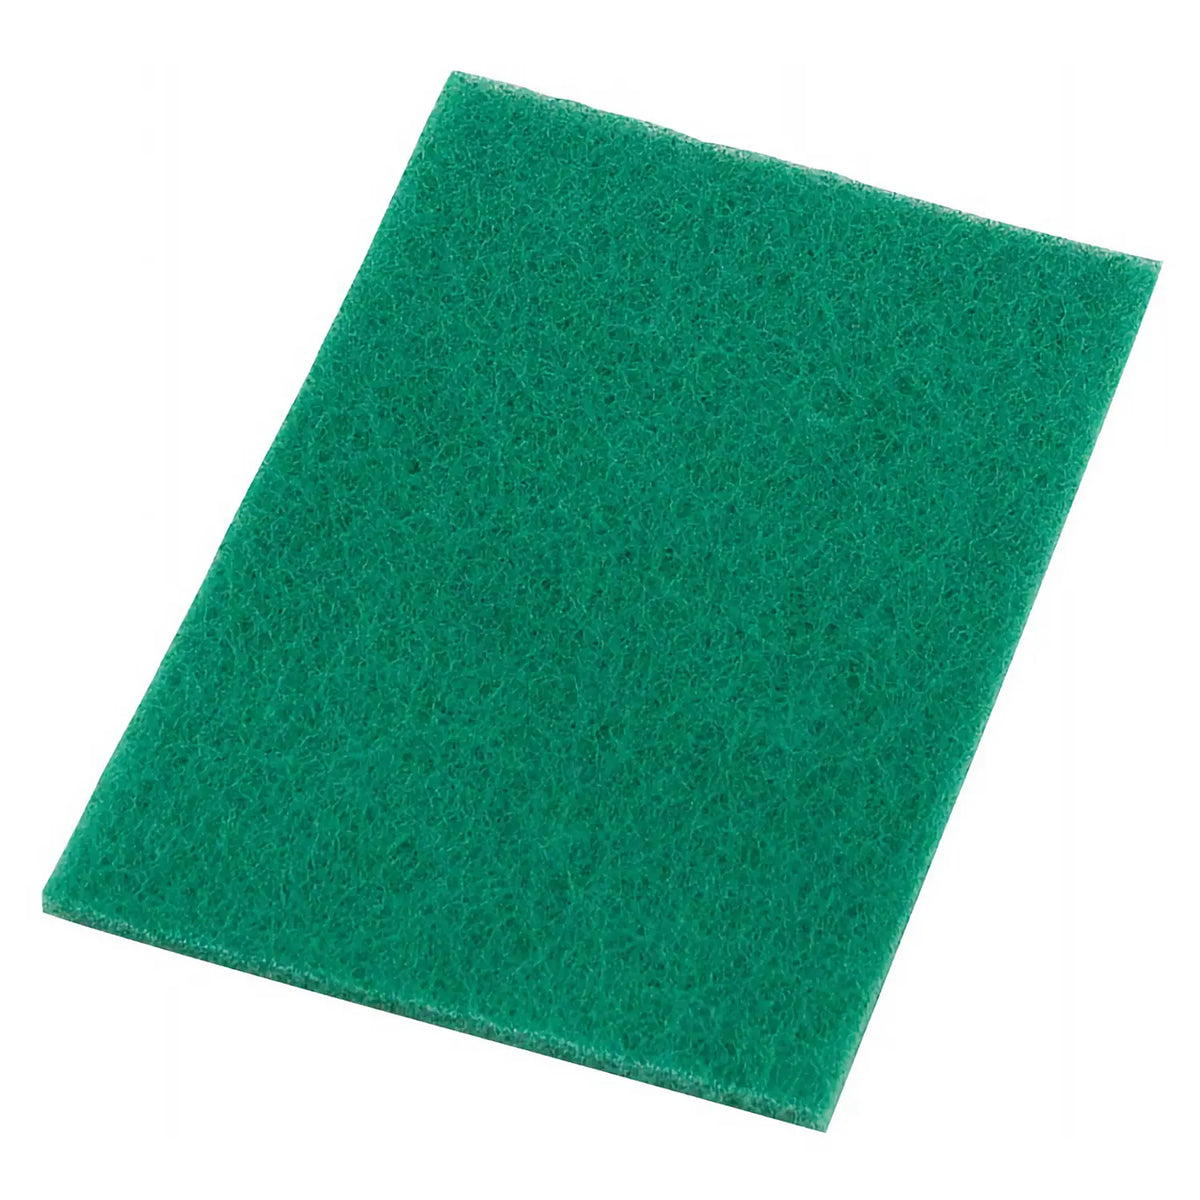 3M Scotch-Brite Nylon Non-Woven Fabric Scrubbing Scour Green